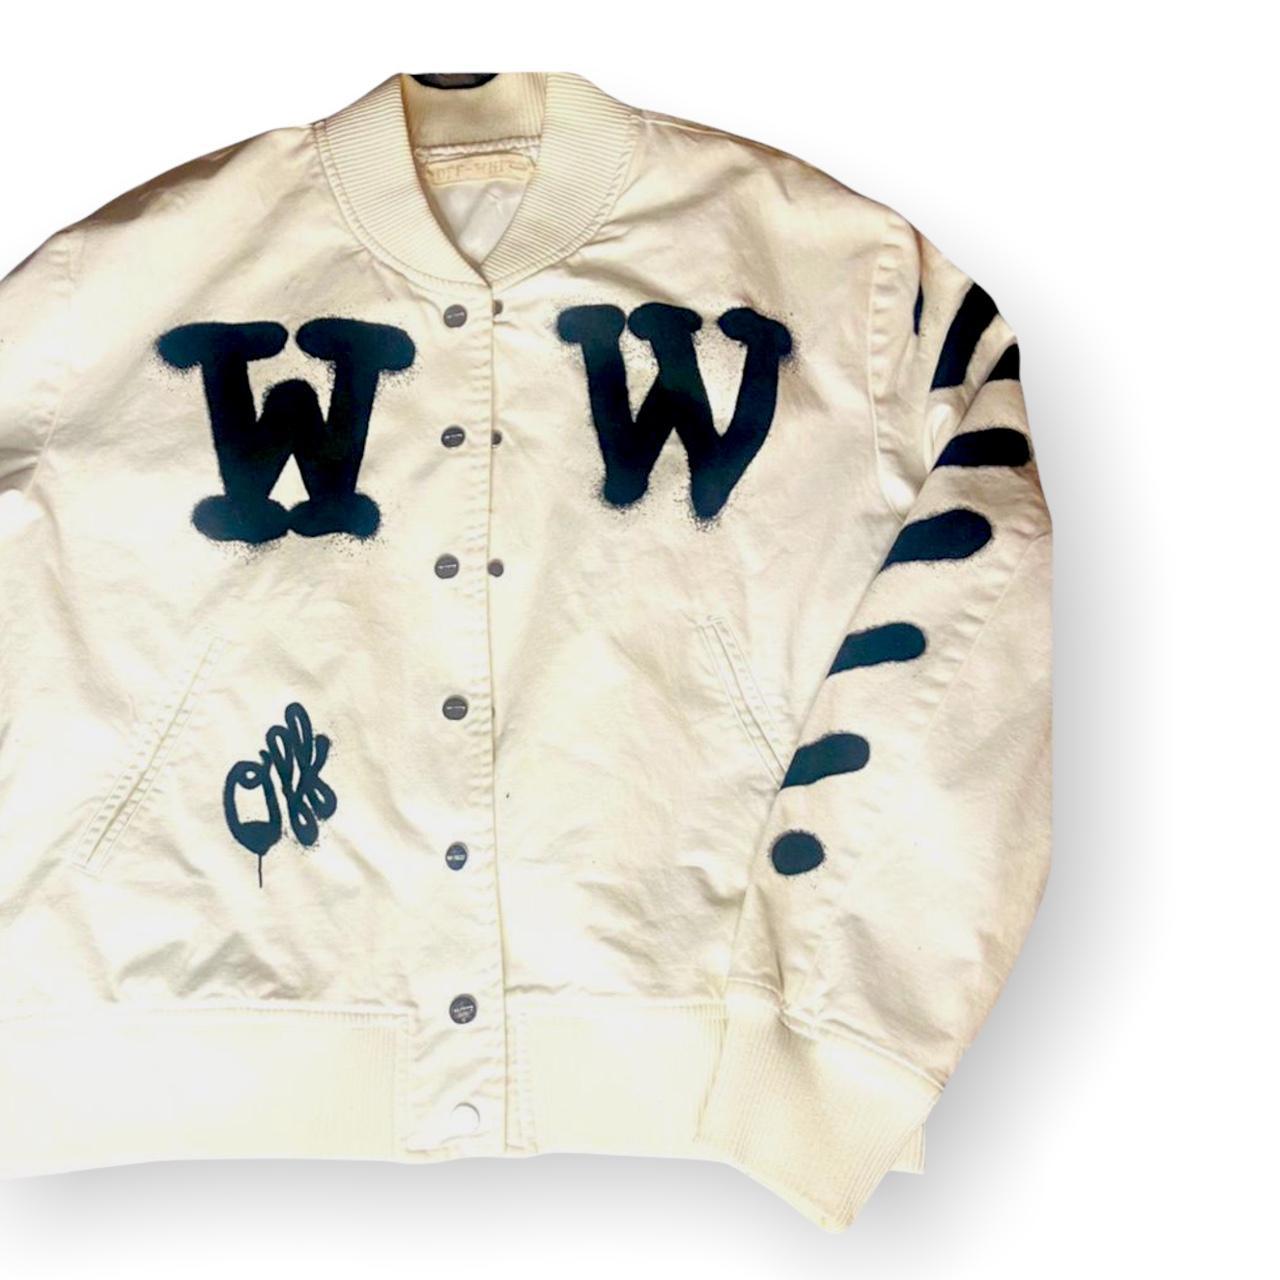 Off-White Taipei - re21 women's Off-White™ varsity jacket and new logo  industrial belt. #offwhite #offwhitetaipei